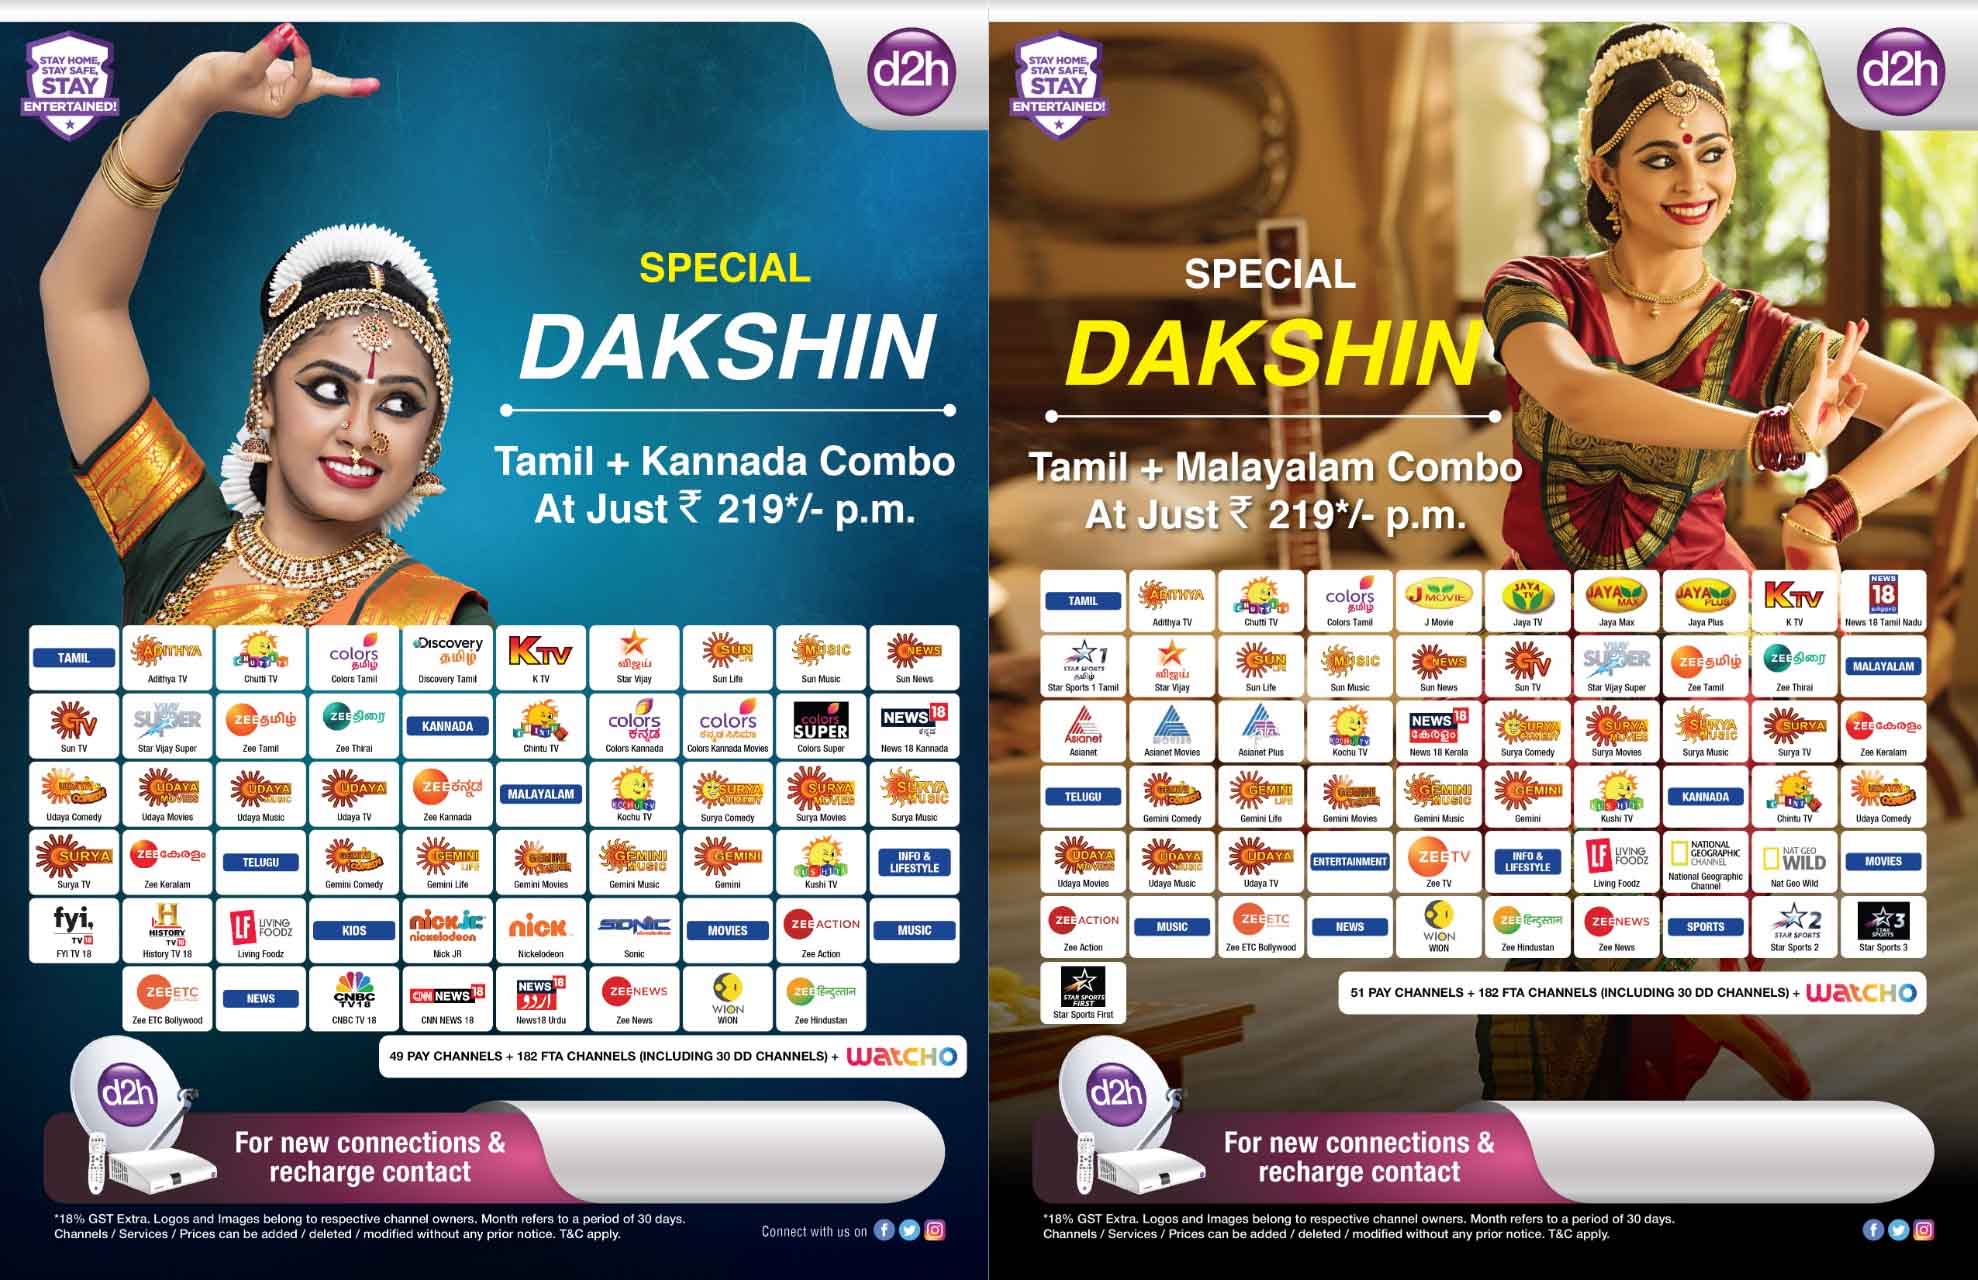 d2h Special Dakshin Combo Packs 2